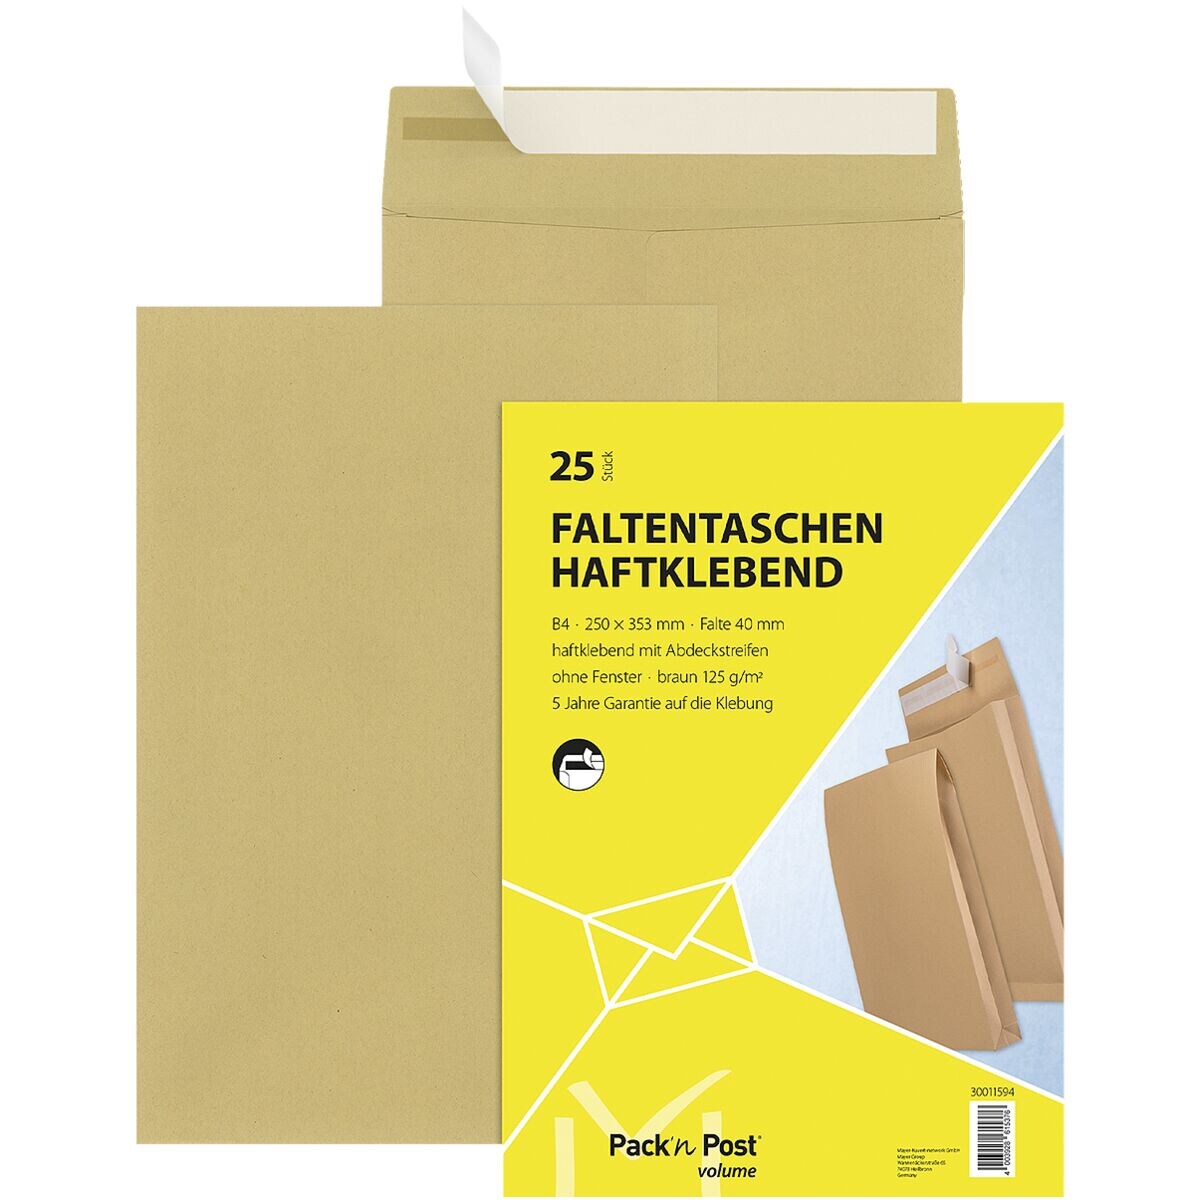 Mailmedia 25 zak-enveloppen met sta/blokbodem , B4 zonder venster